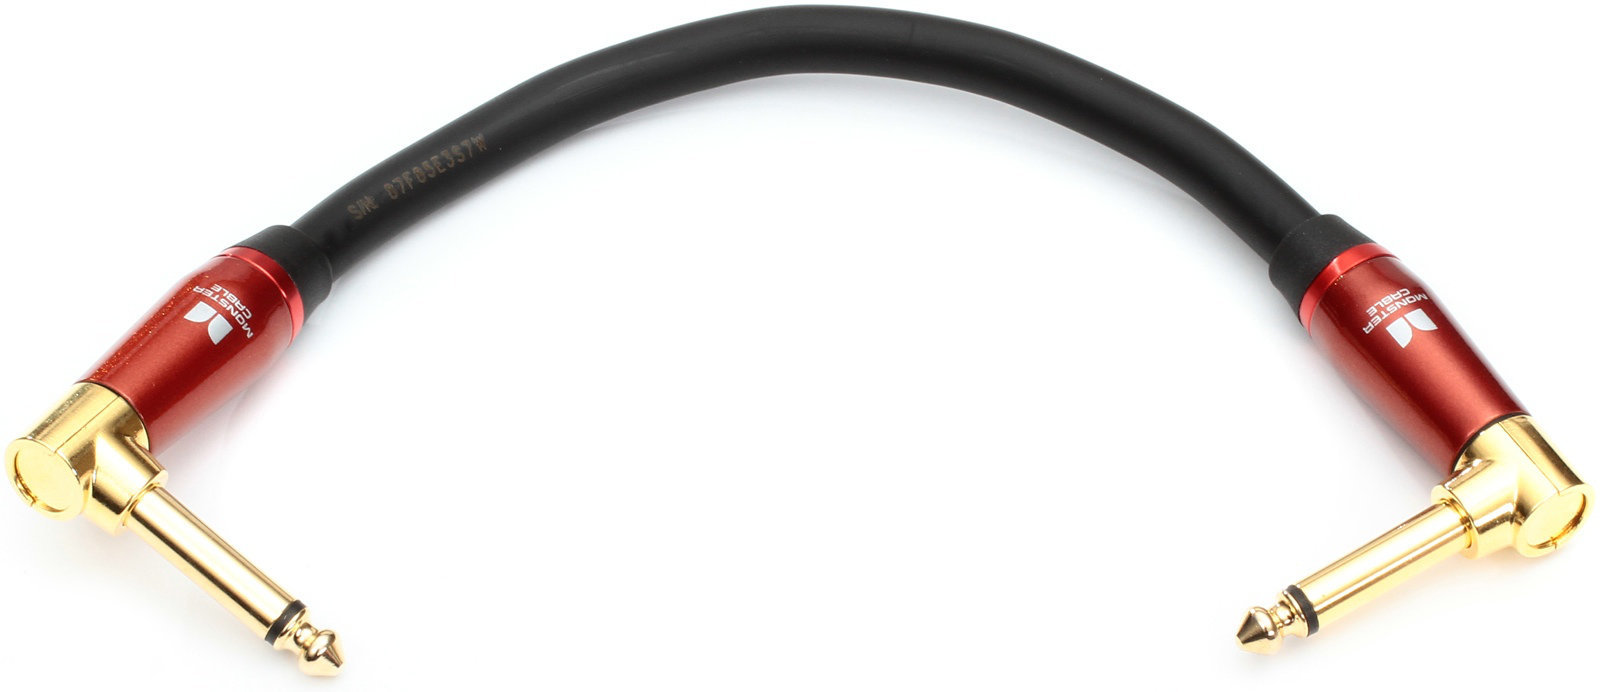 Cablu Patch, cablu adaptor Monster Cable Accoustic 0,75DA 0,2 m Negru 20 cm Oblic - Oblic